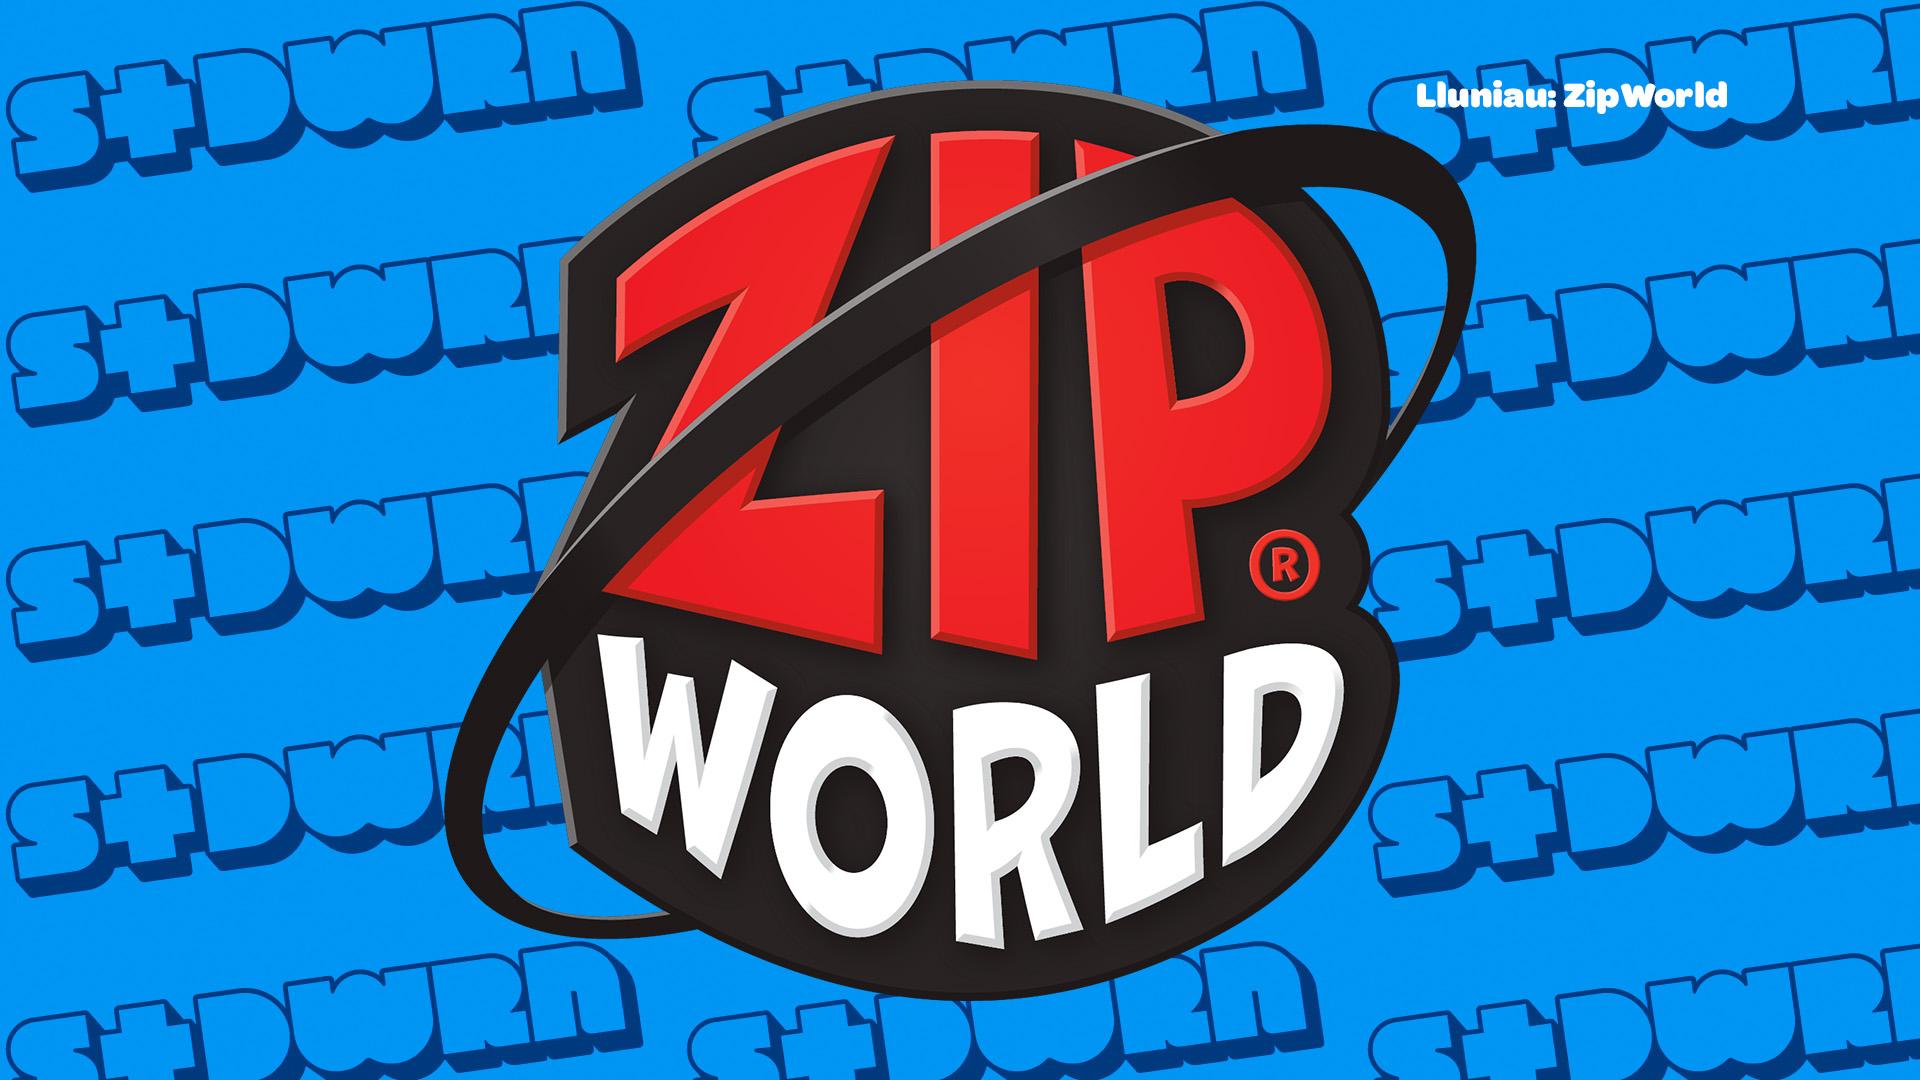 Cystadleuaeth Talebau Zip World